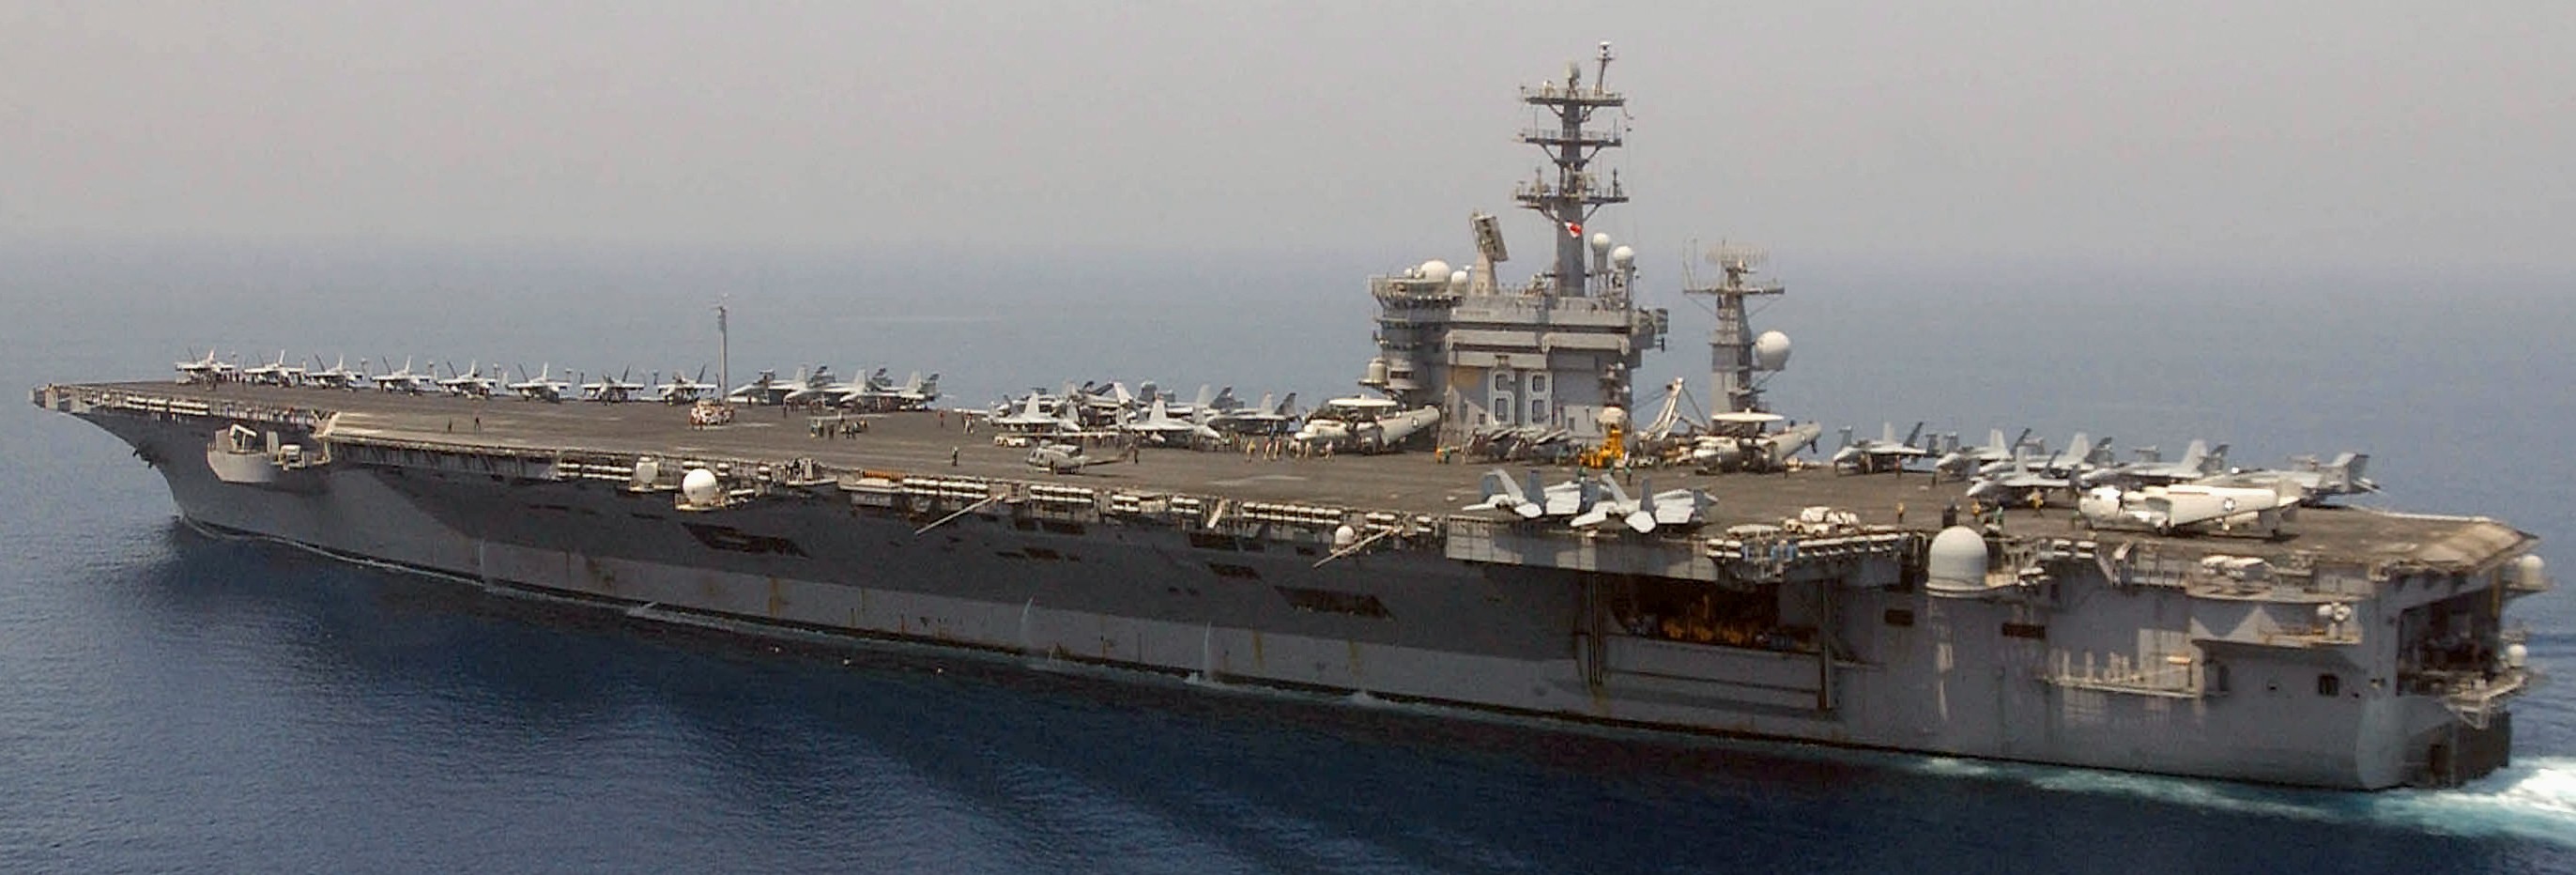 cvn-68 uss nimitz aircraft carrier air wing cvw-11 us navy persian gulf 2005 153